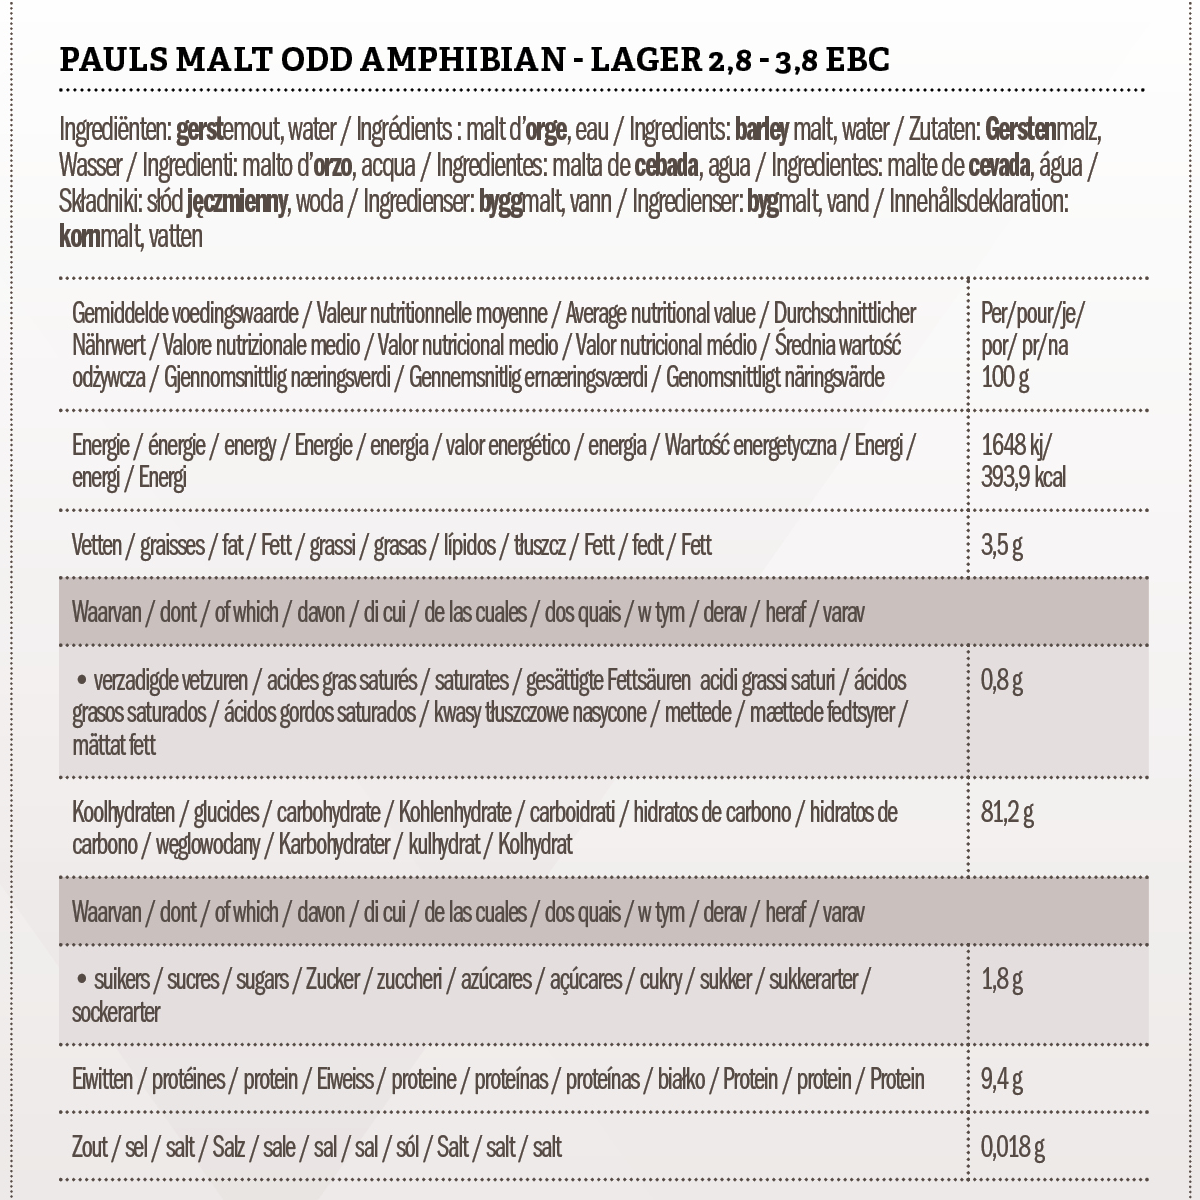 Pauls Malt Odd Amphibian - Lager 2.8 - 3.8 EBC 5 kg